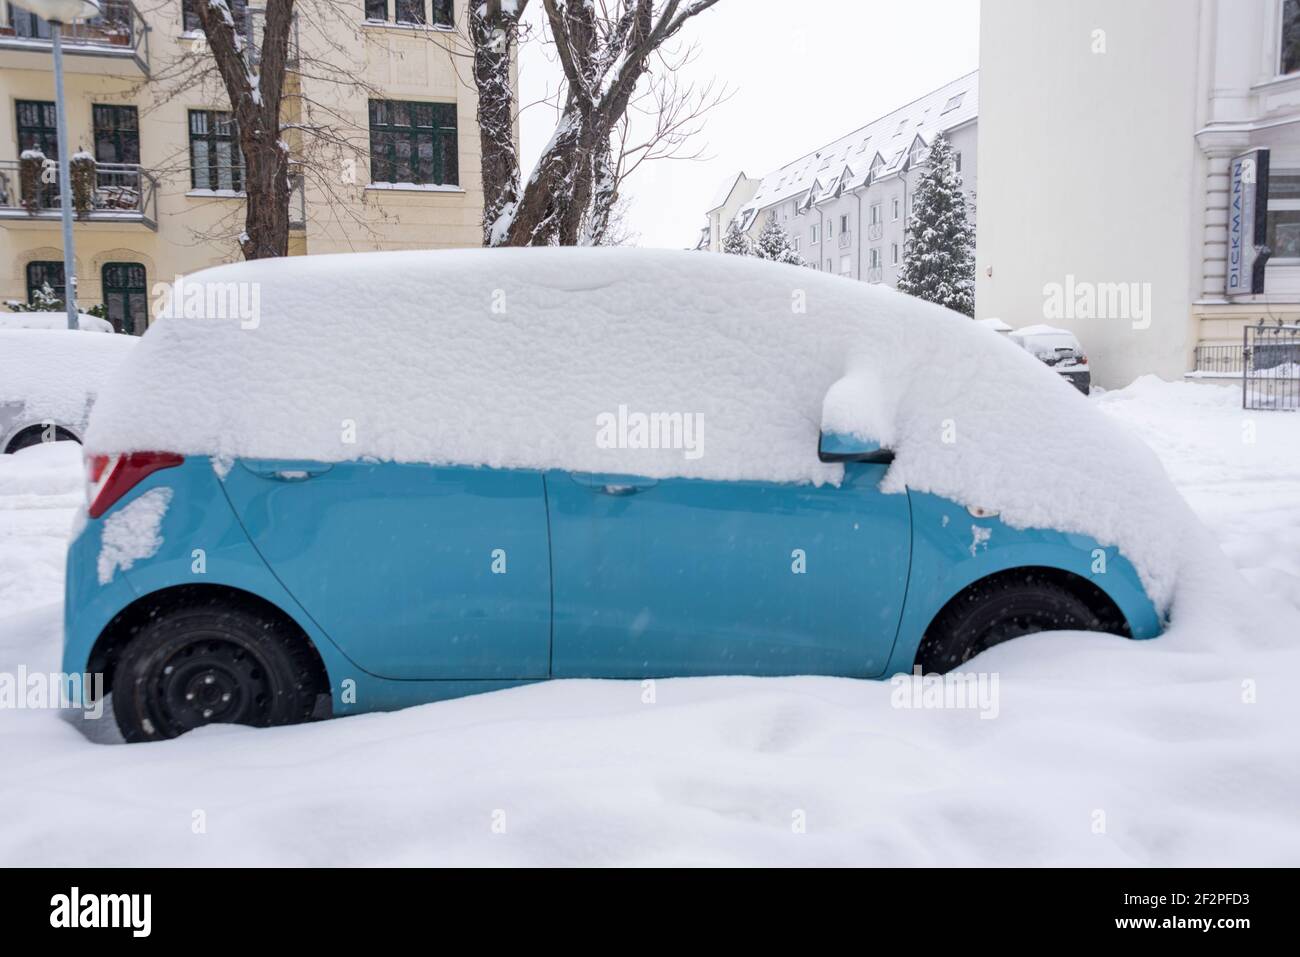 Auto unter Plane auf schneebedeckten Straßenrand im Winter, Deutschland  Stockfotografie - Alamy